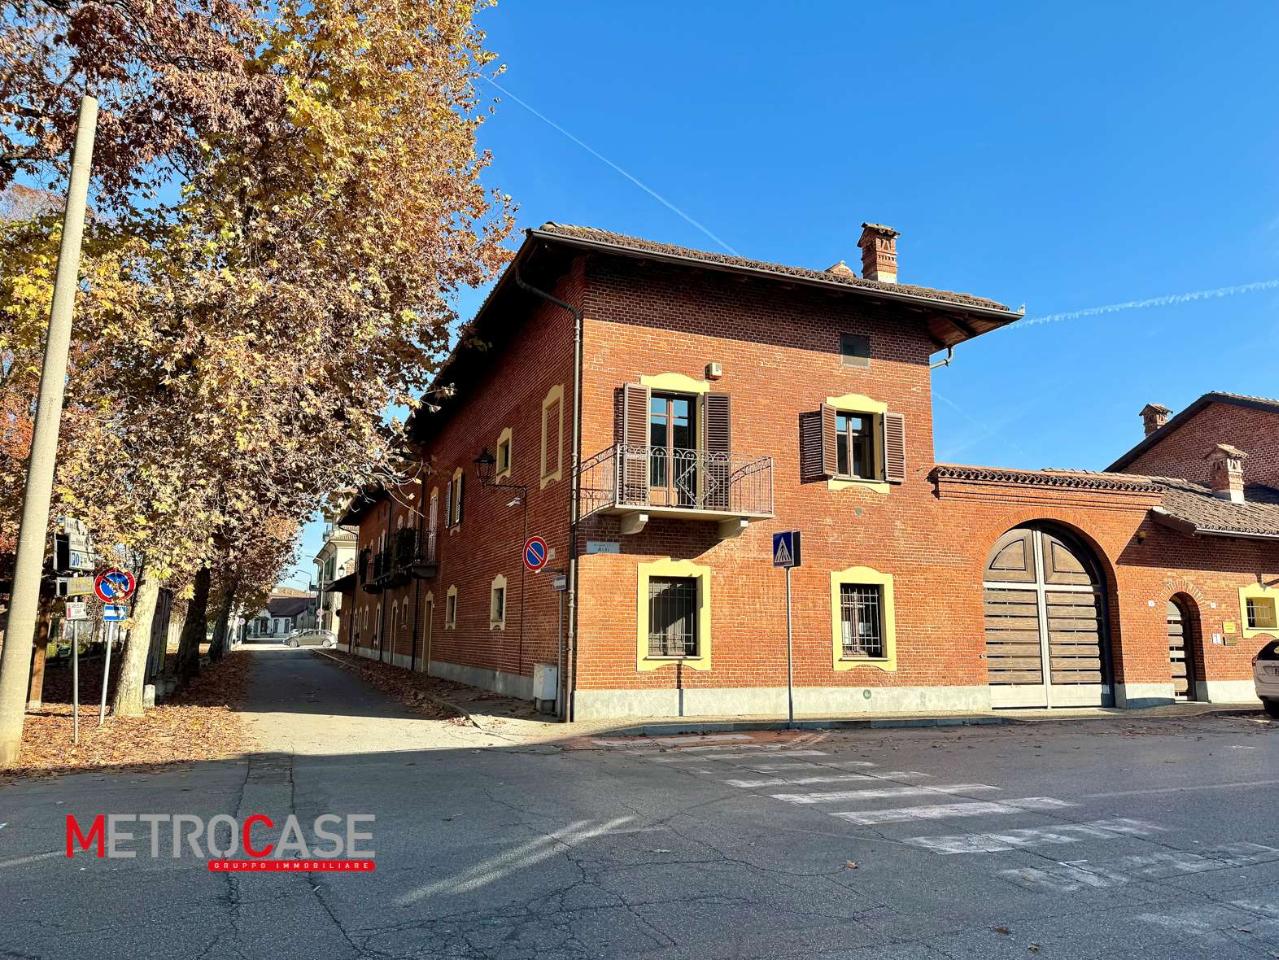 Appartamento in vendita a Villanova D'Asti